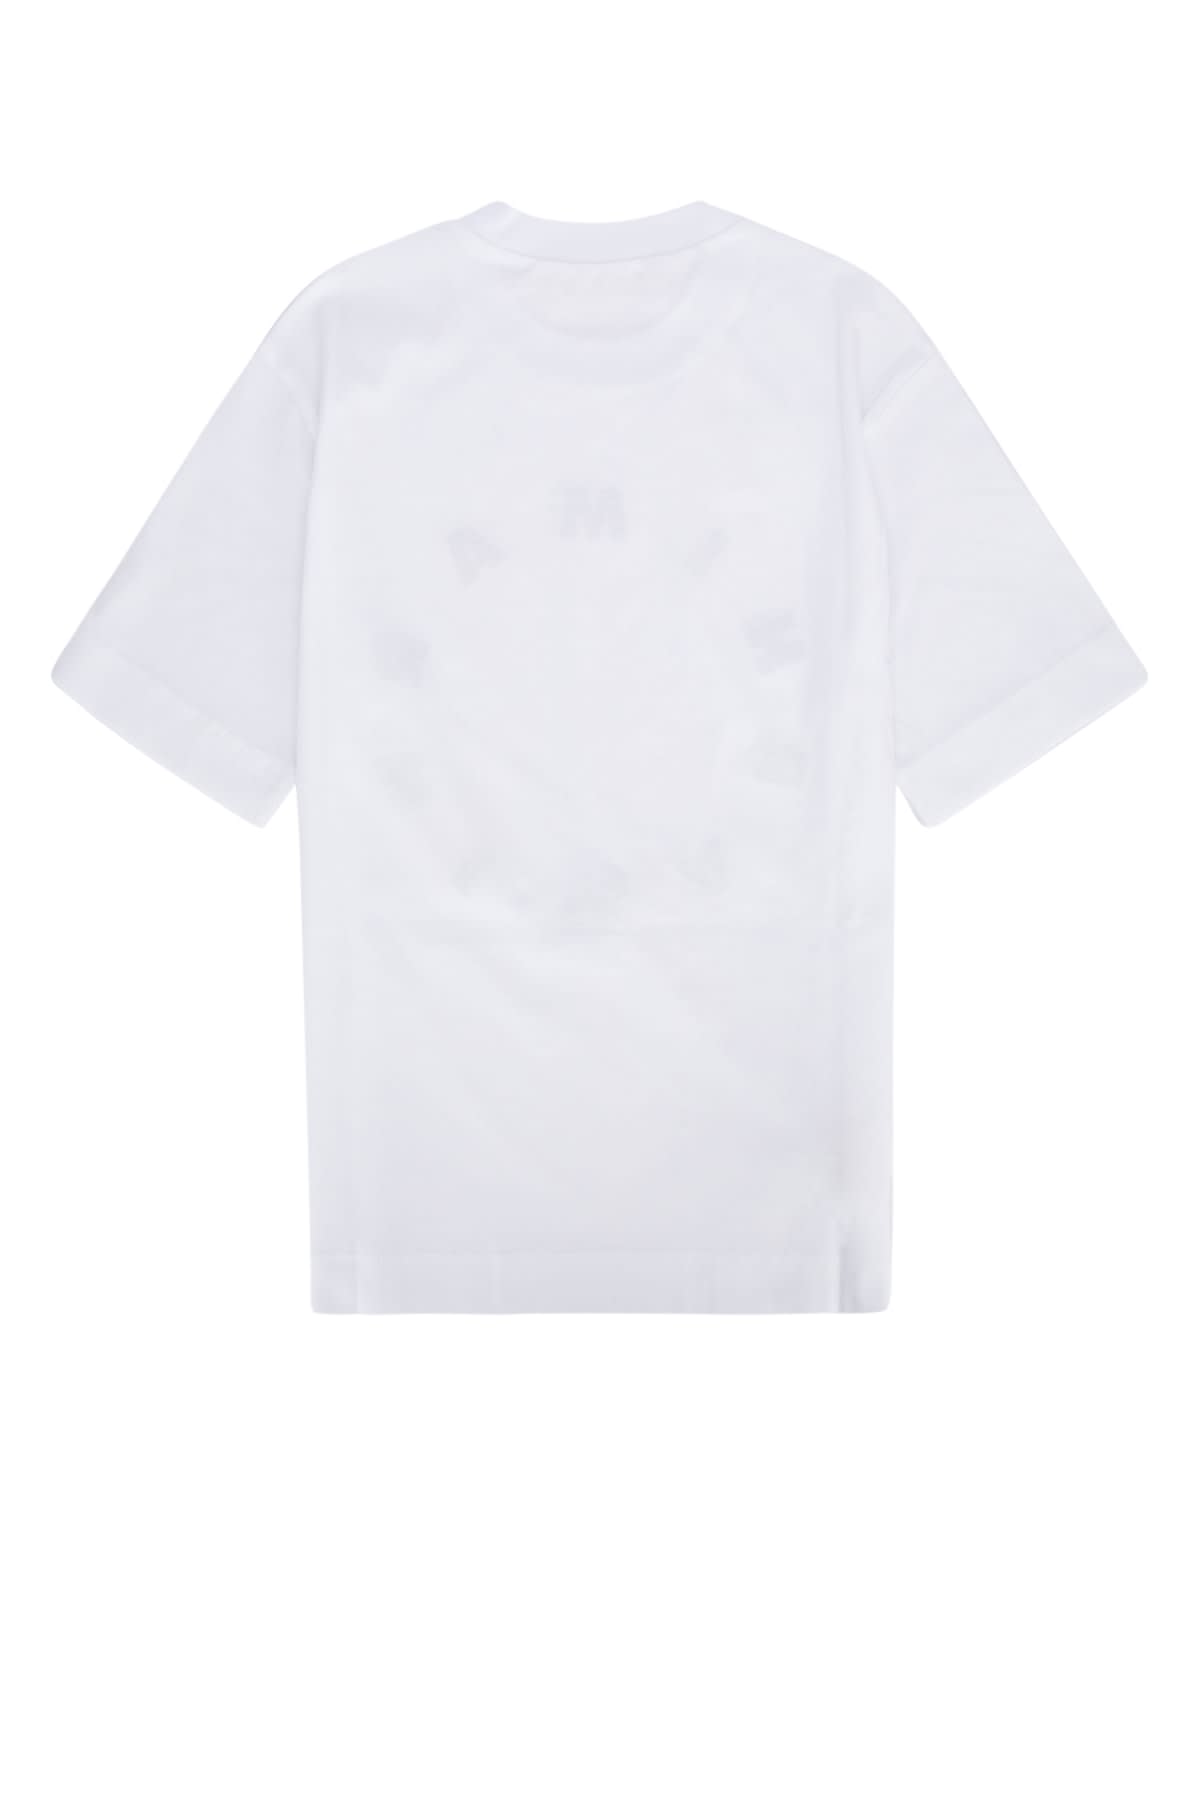 Marni Kids' T-shirt In 0m100